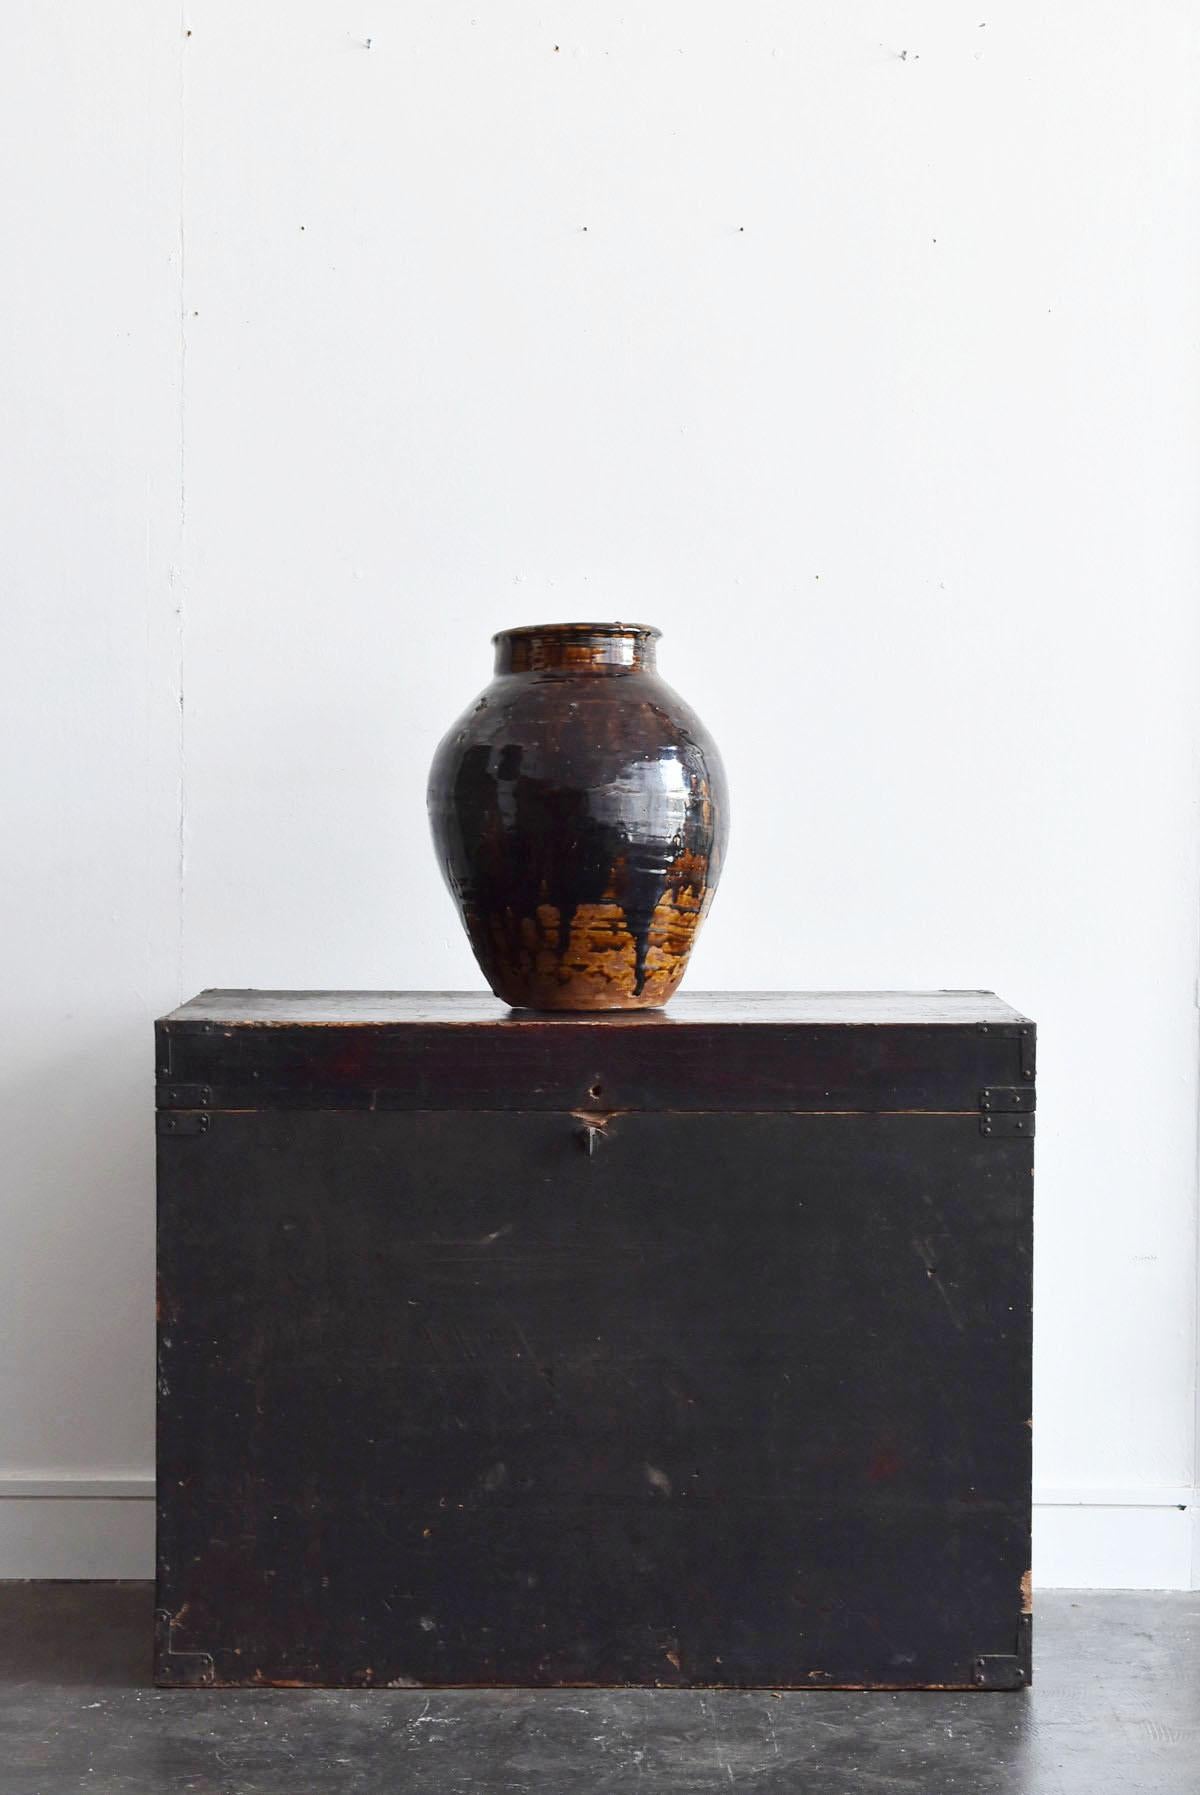 Japanese Old Edo Period Jar / 